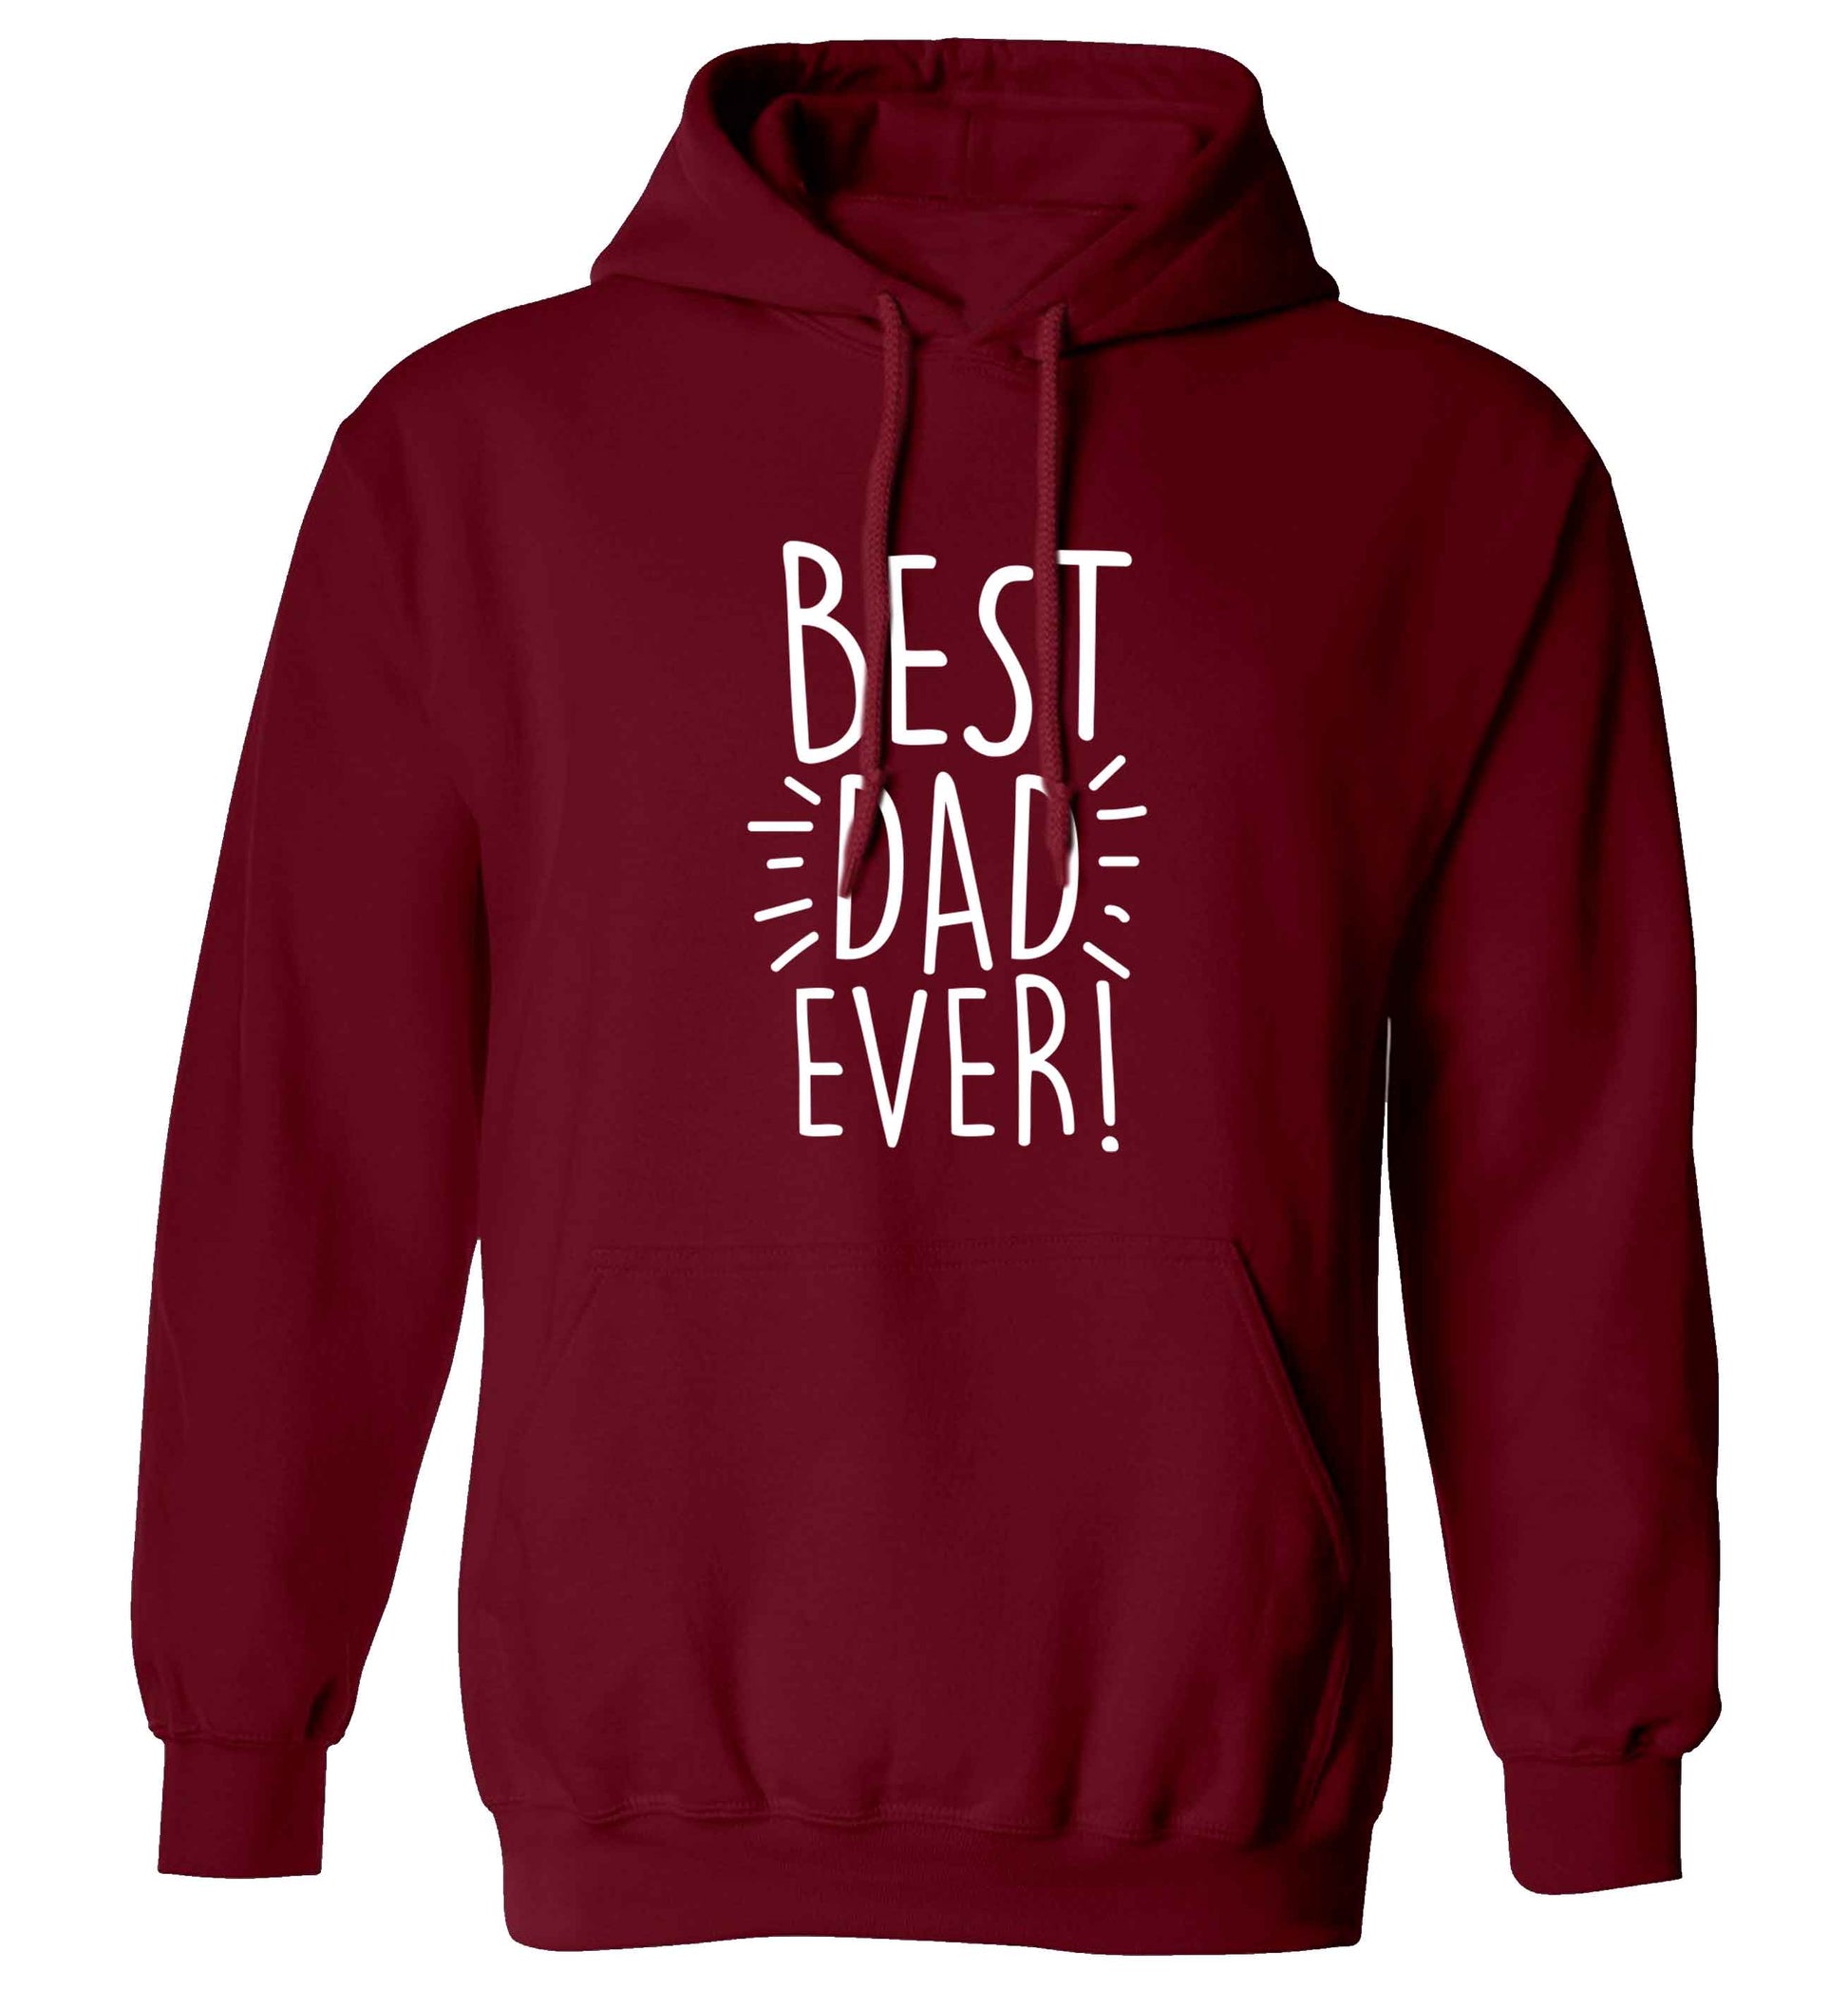 Best dad ever! adults unisex maroon hoodie 2XL